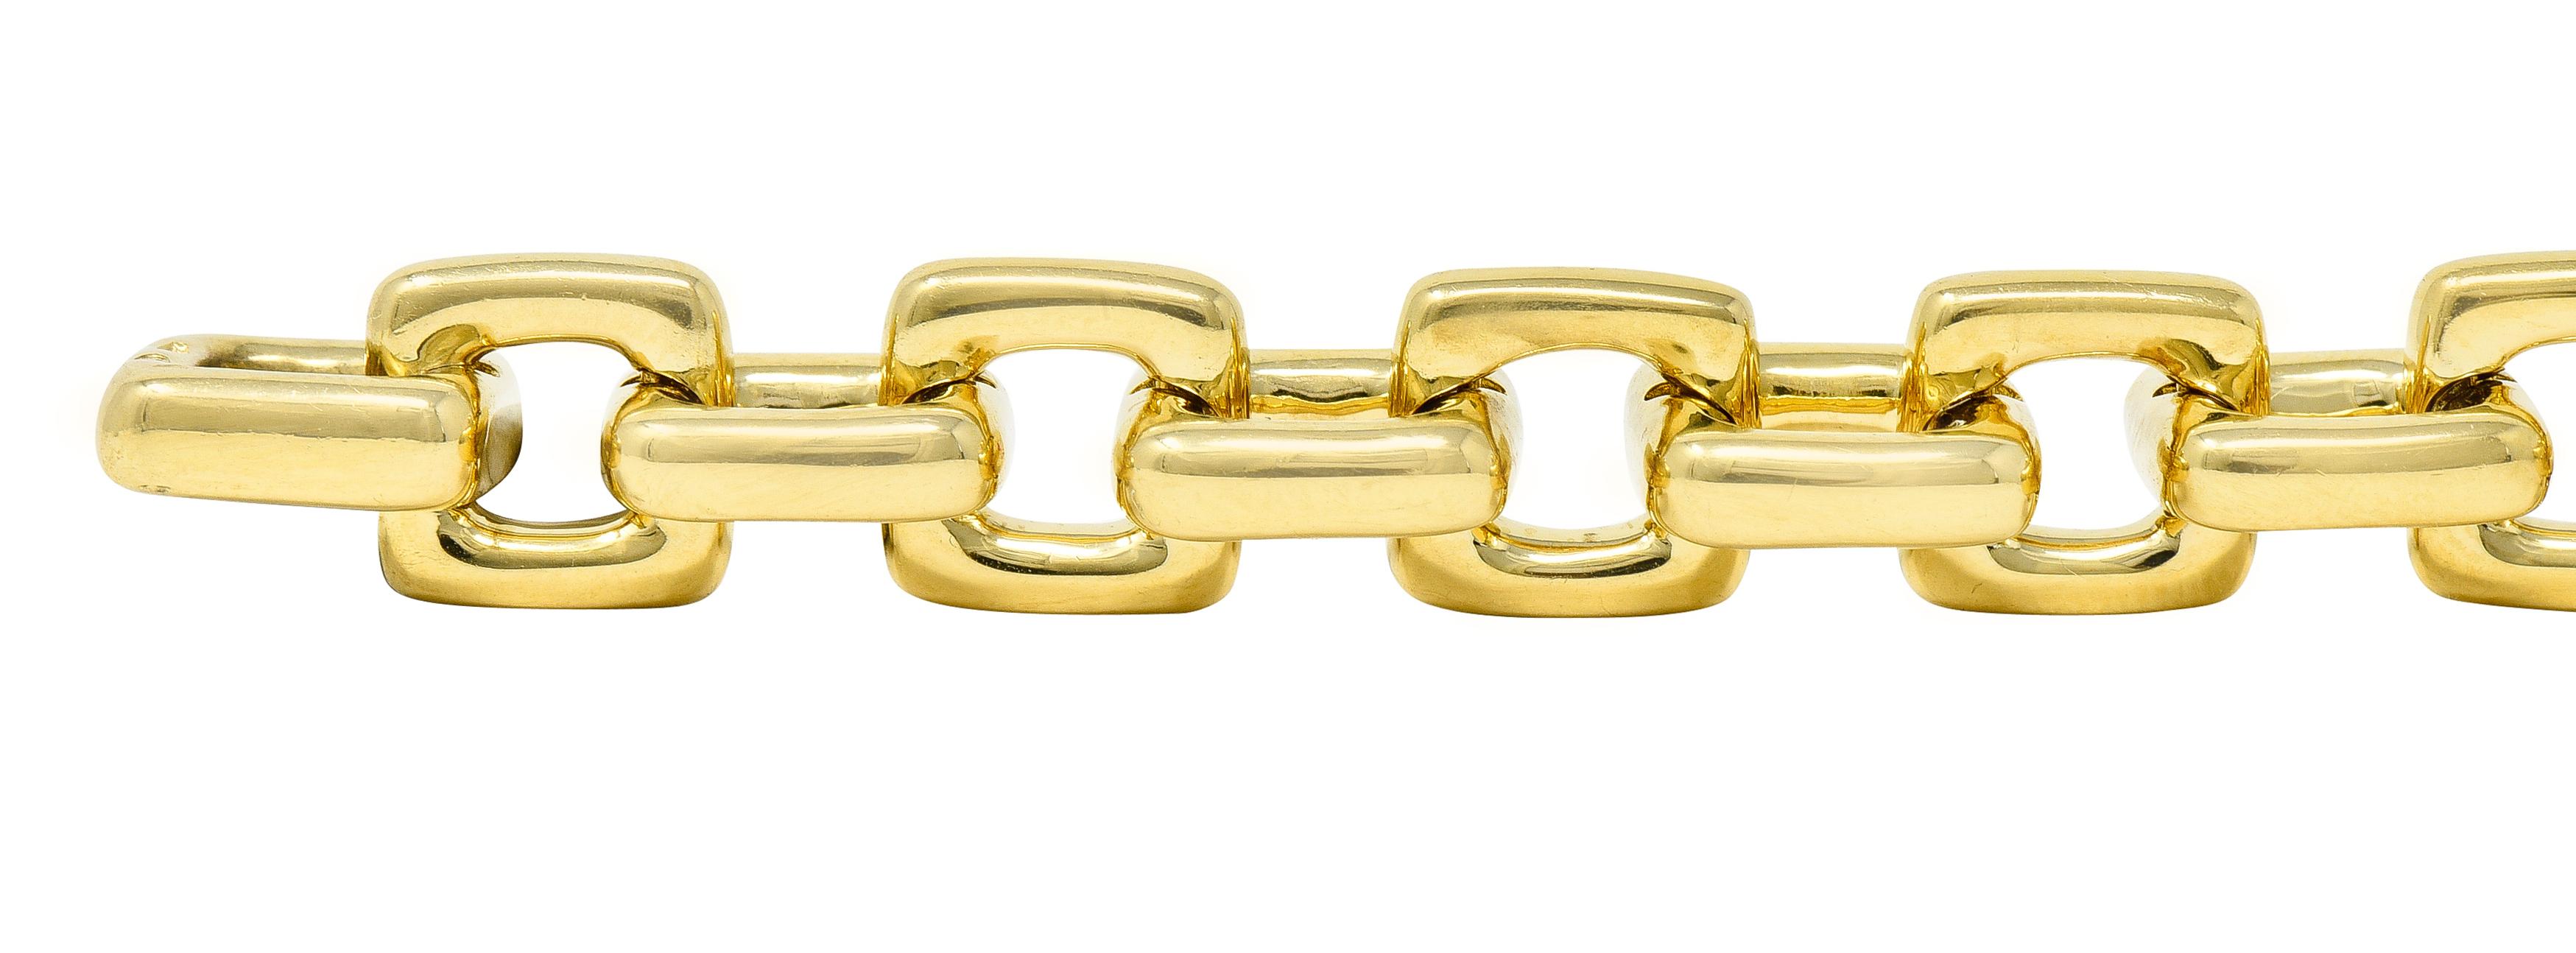 Contemporary Louis Vuitton Paris 2000s 18 Karat Yellow Gold Square Lock & Key Charm Bracelet